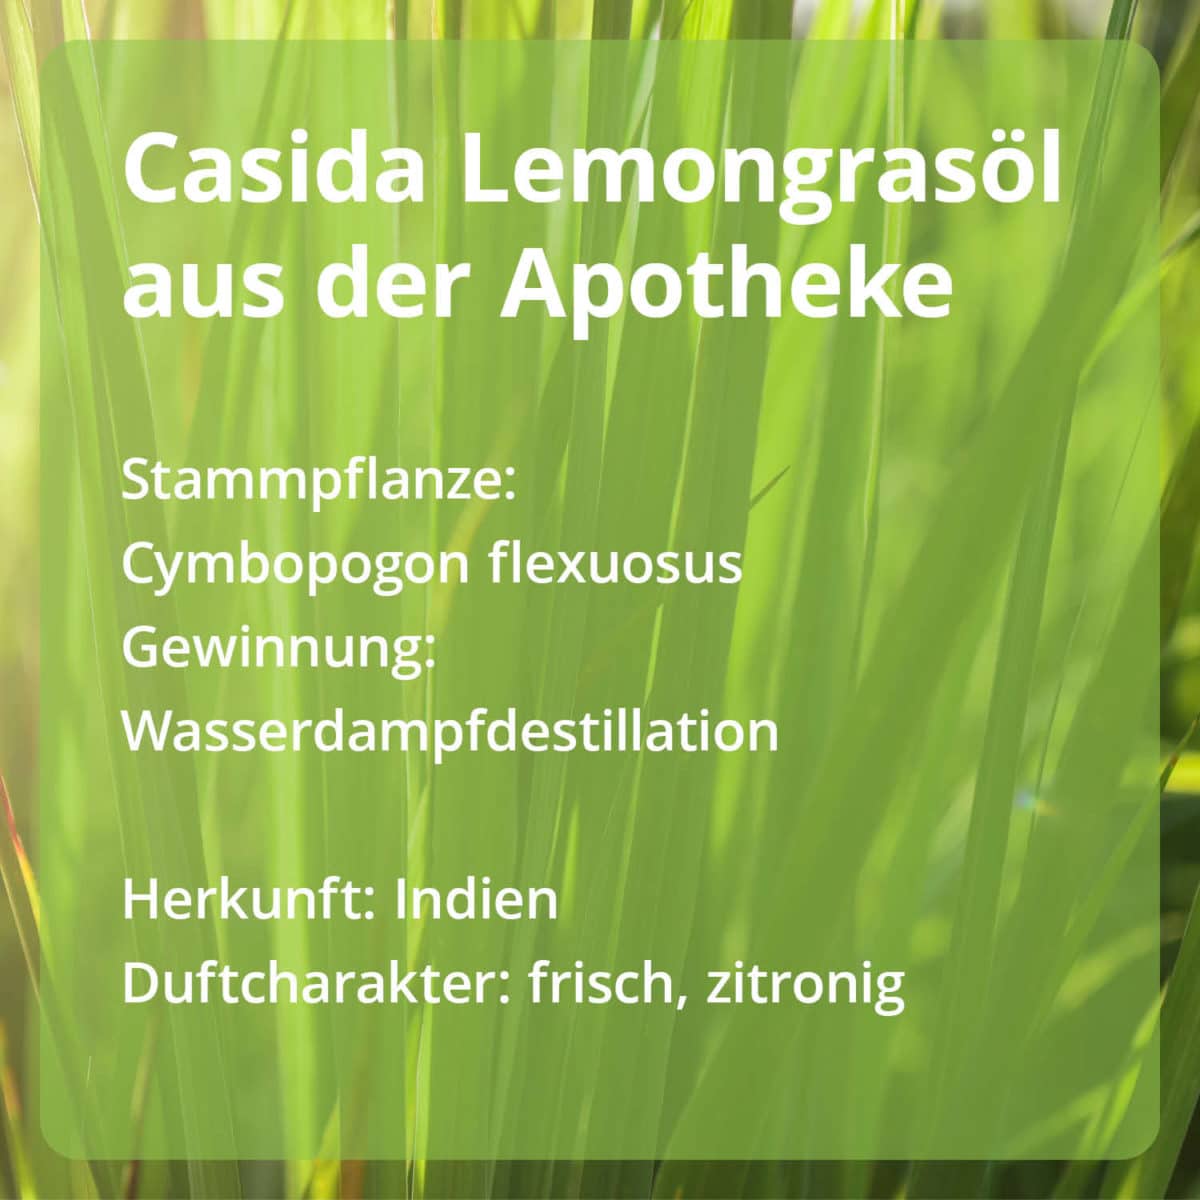 Lemongrasöl Zitronengrasöl PZN 15880739 Casida Ätherische Öle Stammpflanze Gewinnung Herkunft naturrein